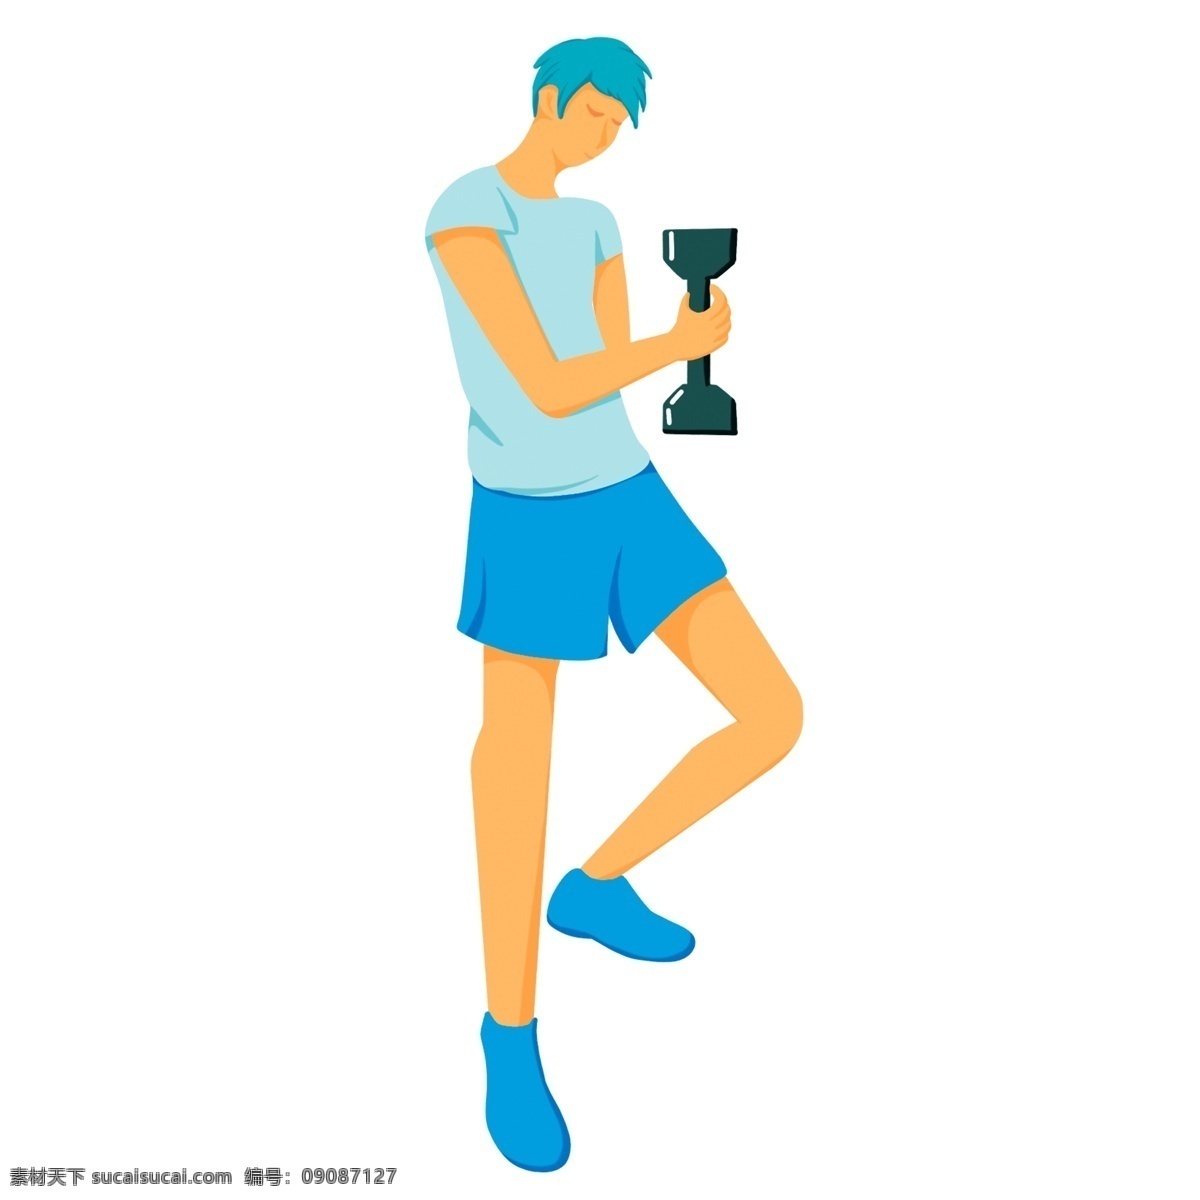 蓝色 衣服 人物 孩子 男子 健身 卡通 彩色 小清新 创意 插画 手绘 元素 现代 简约 装饰 图案